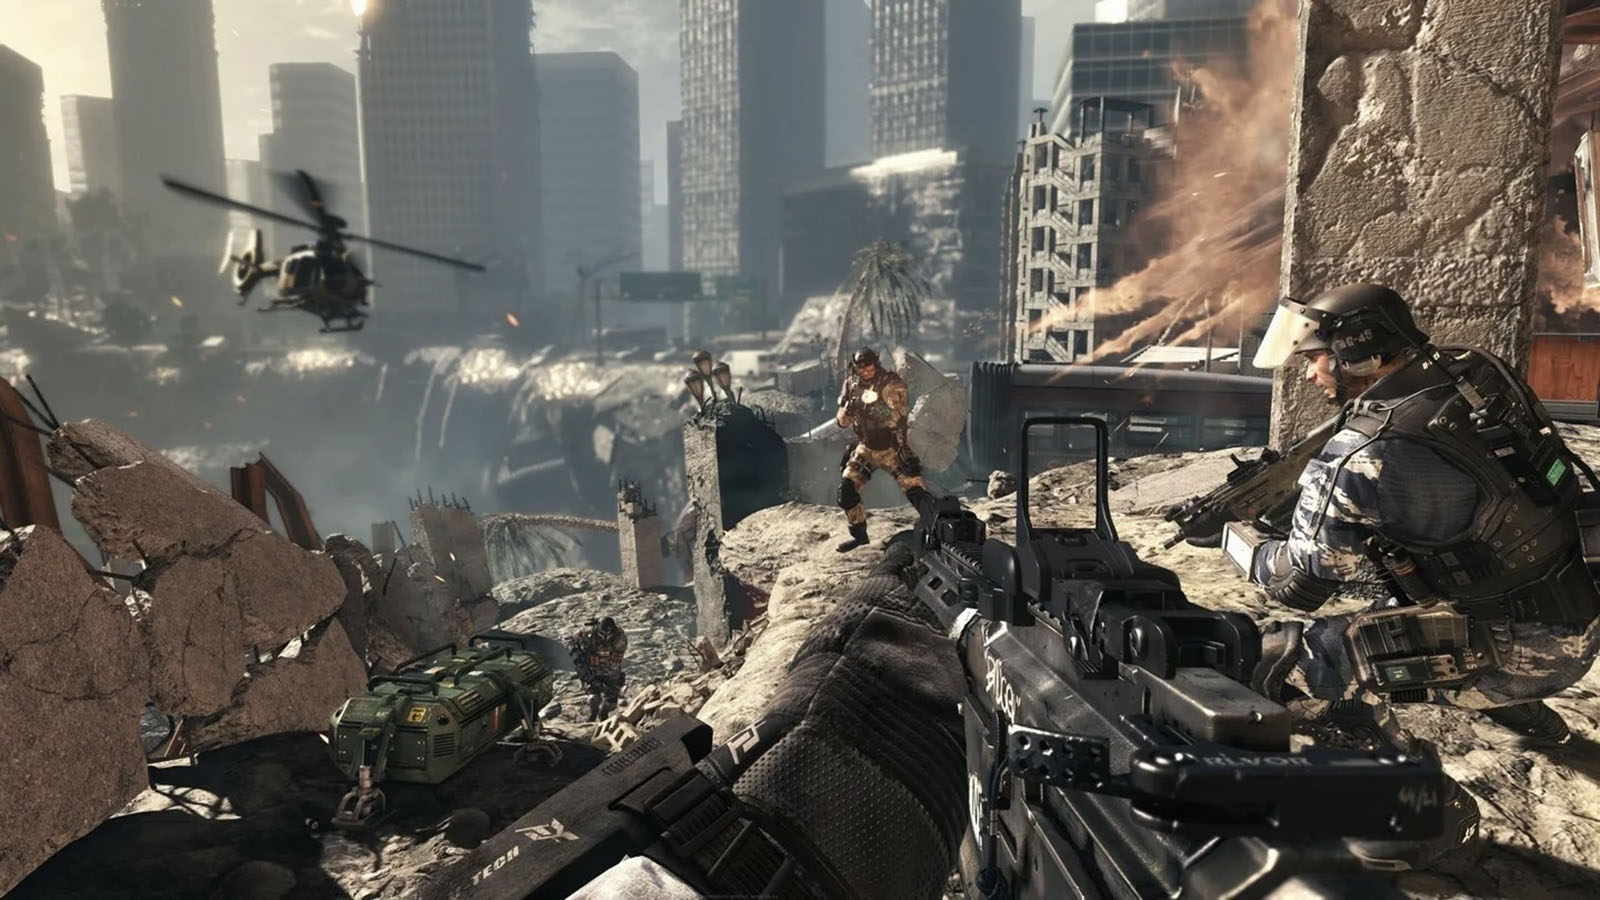 Сети могут отказаться от продаж новой Call of Duty из-за призывов к насилию